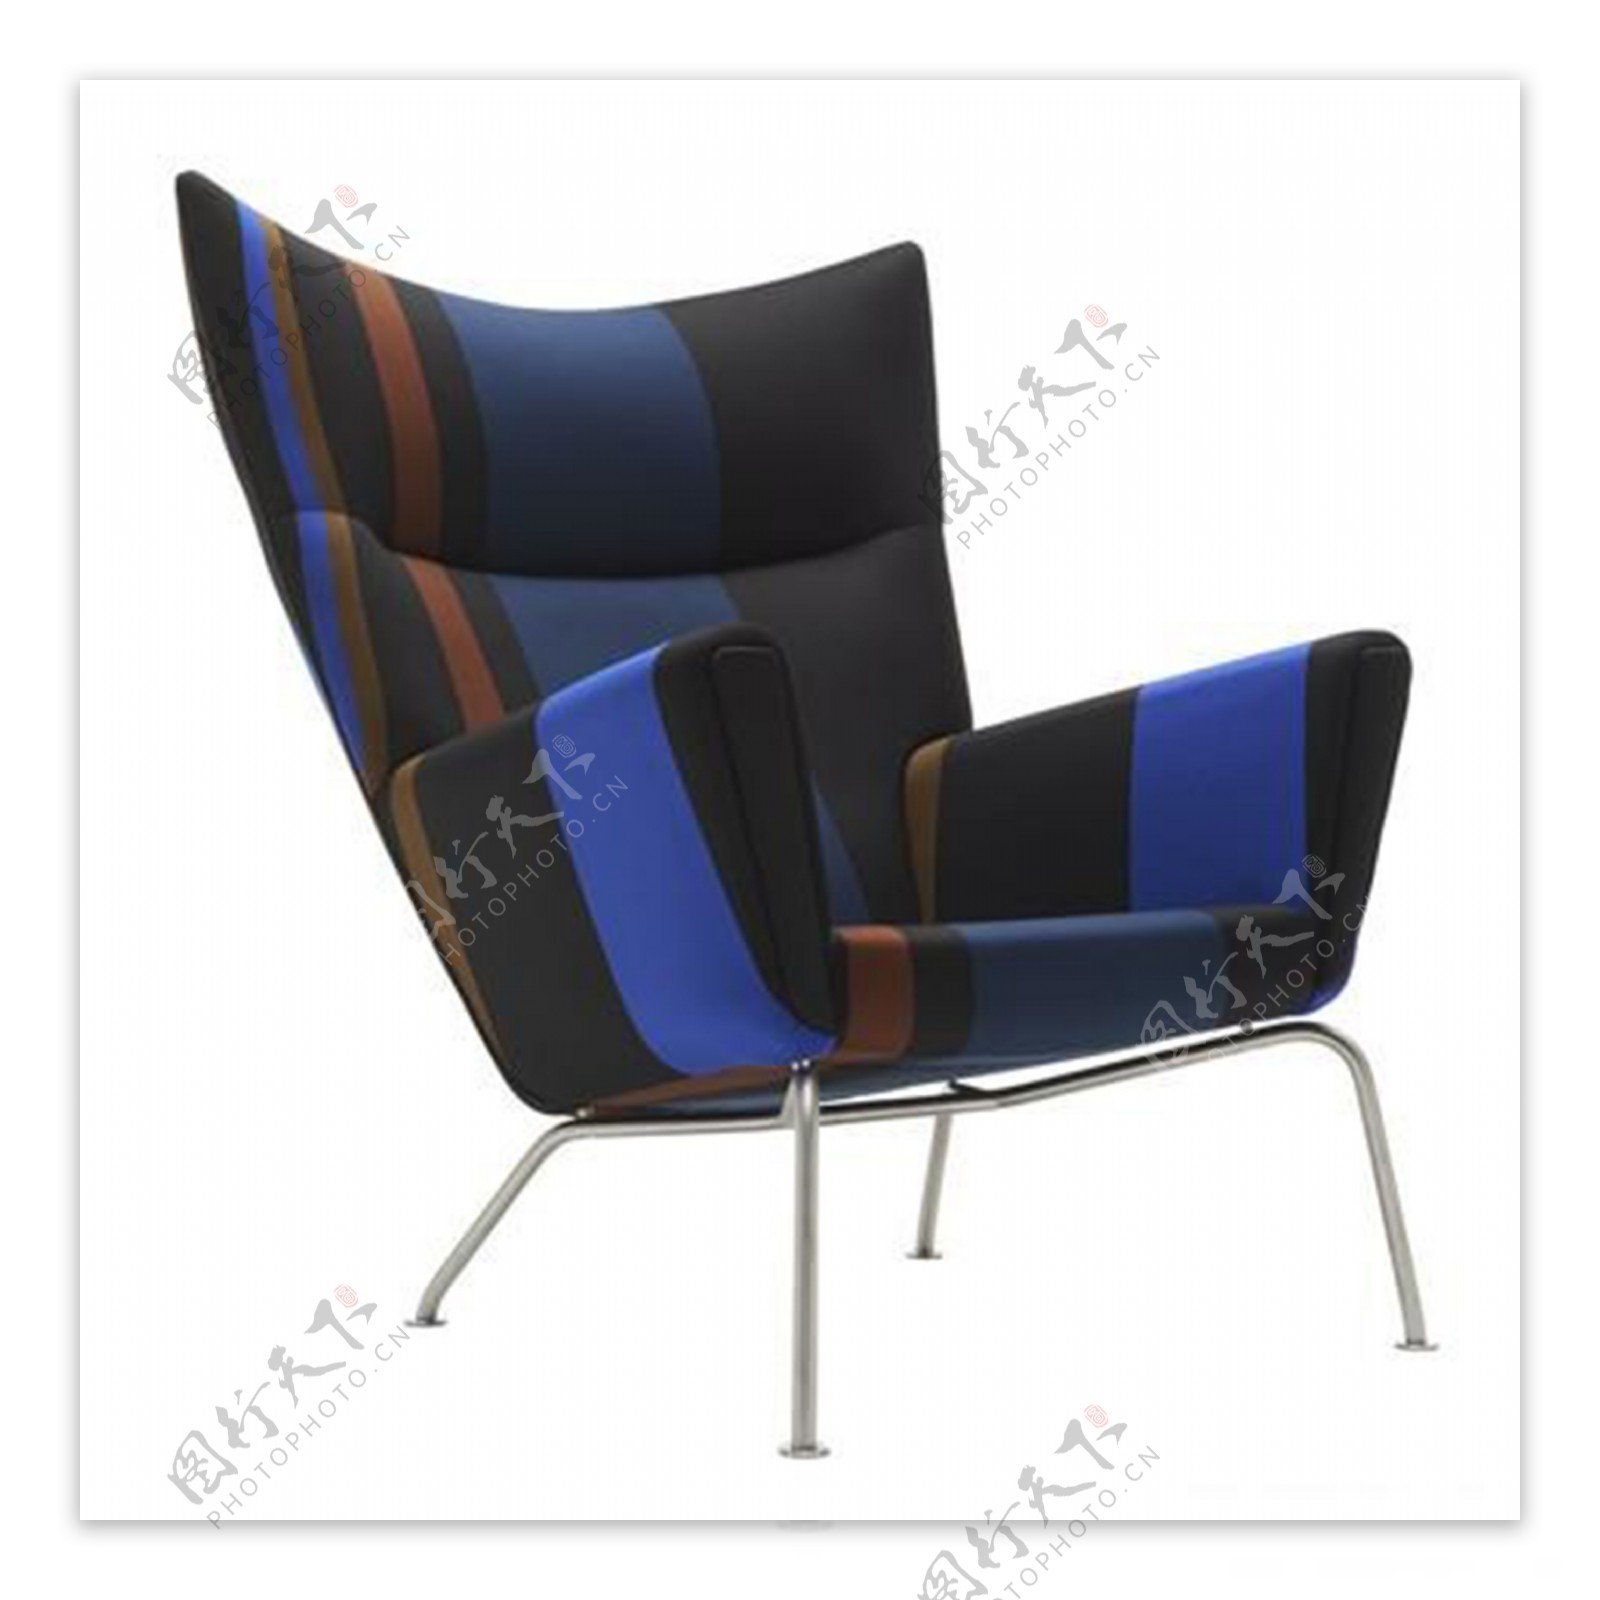 椅子设计产品设计